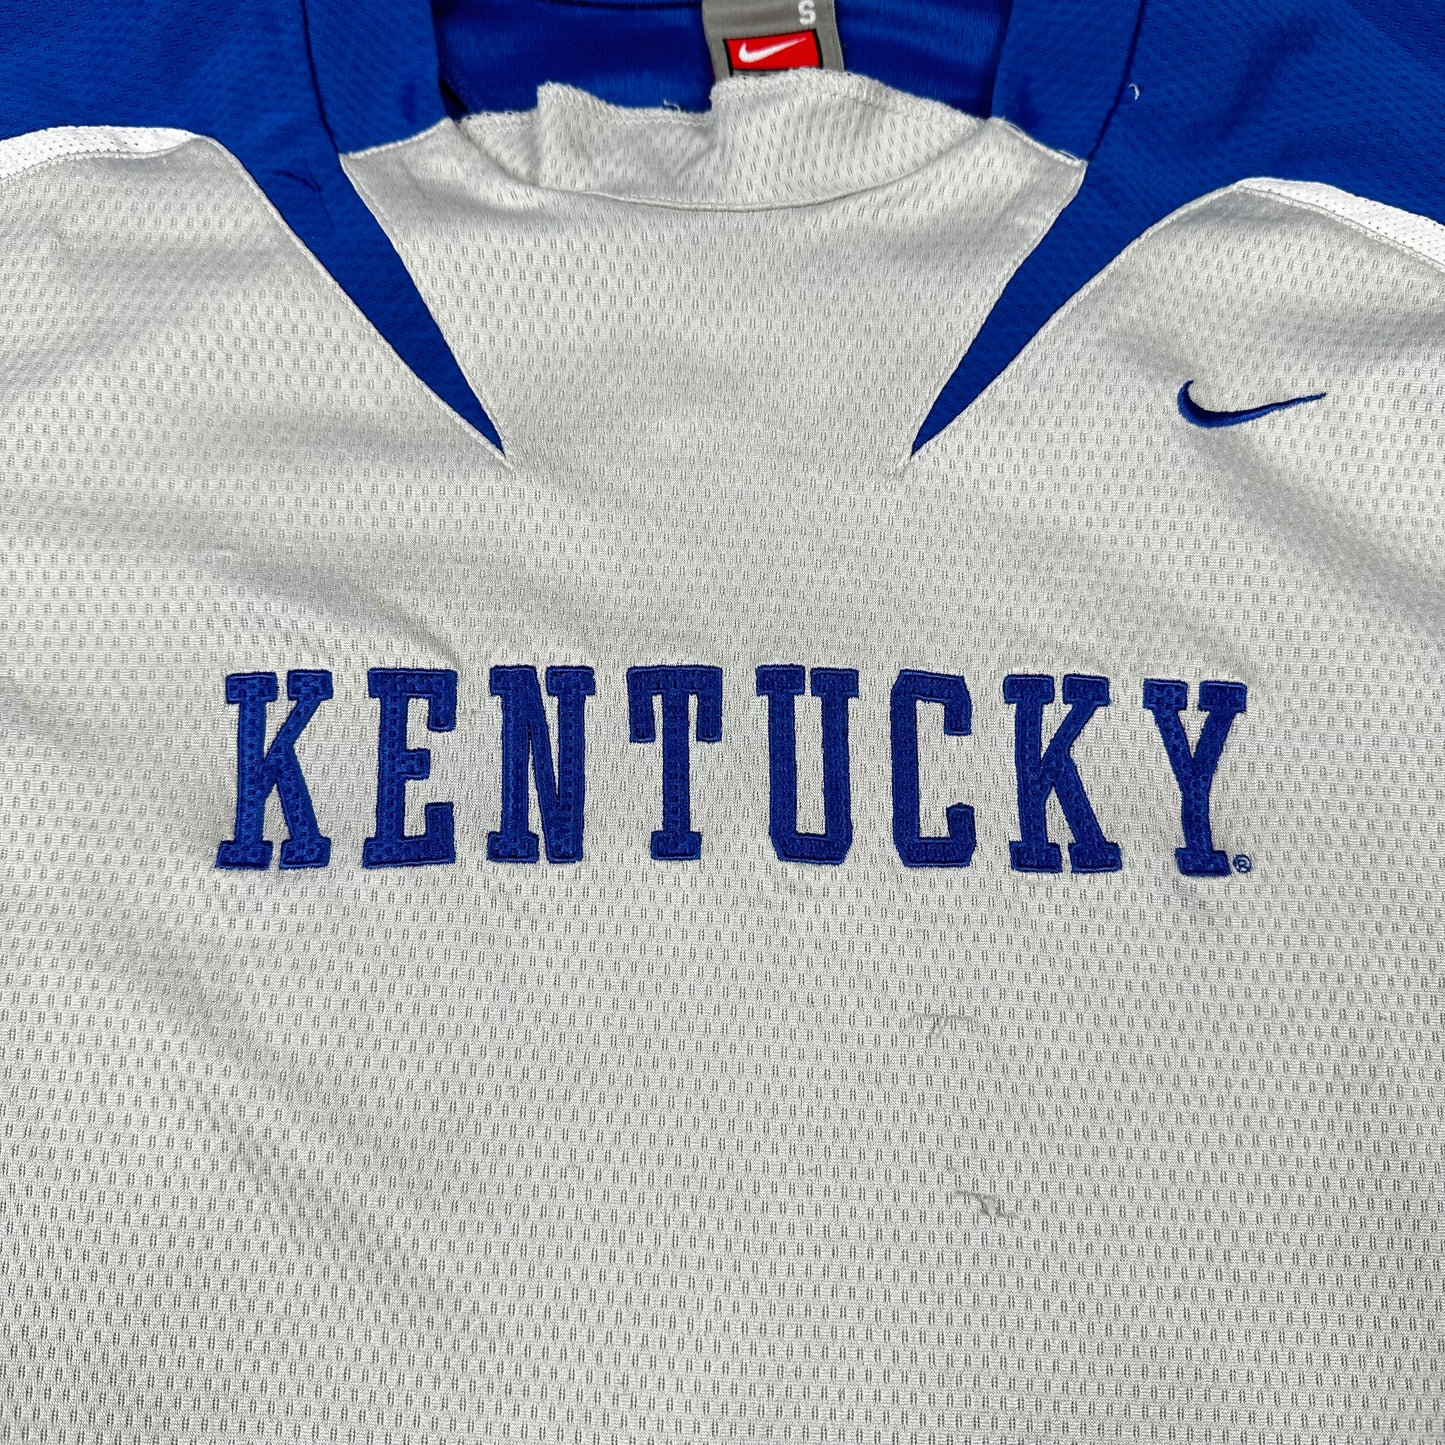 University of Kentucky Nike Athletic Tee